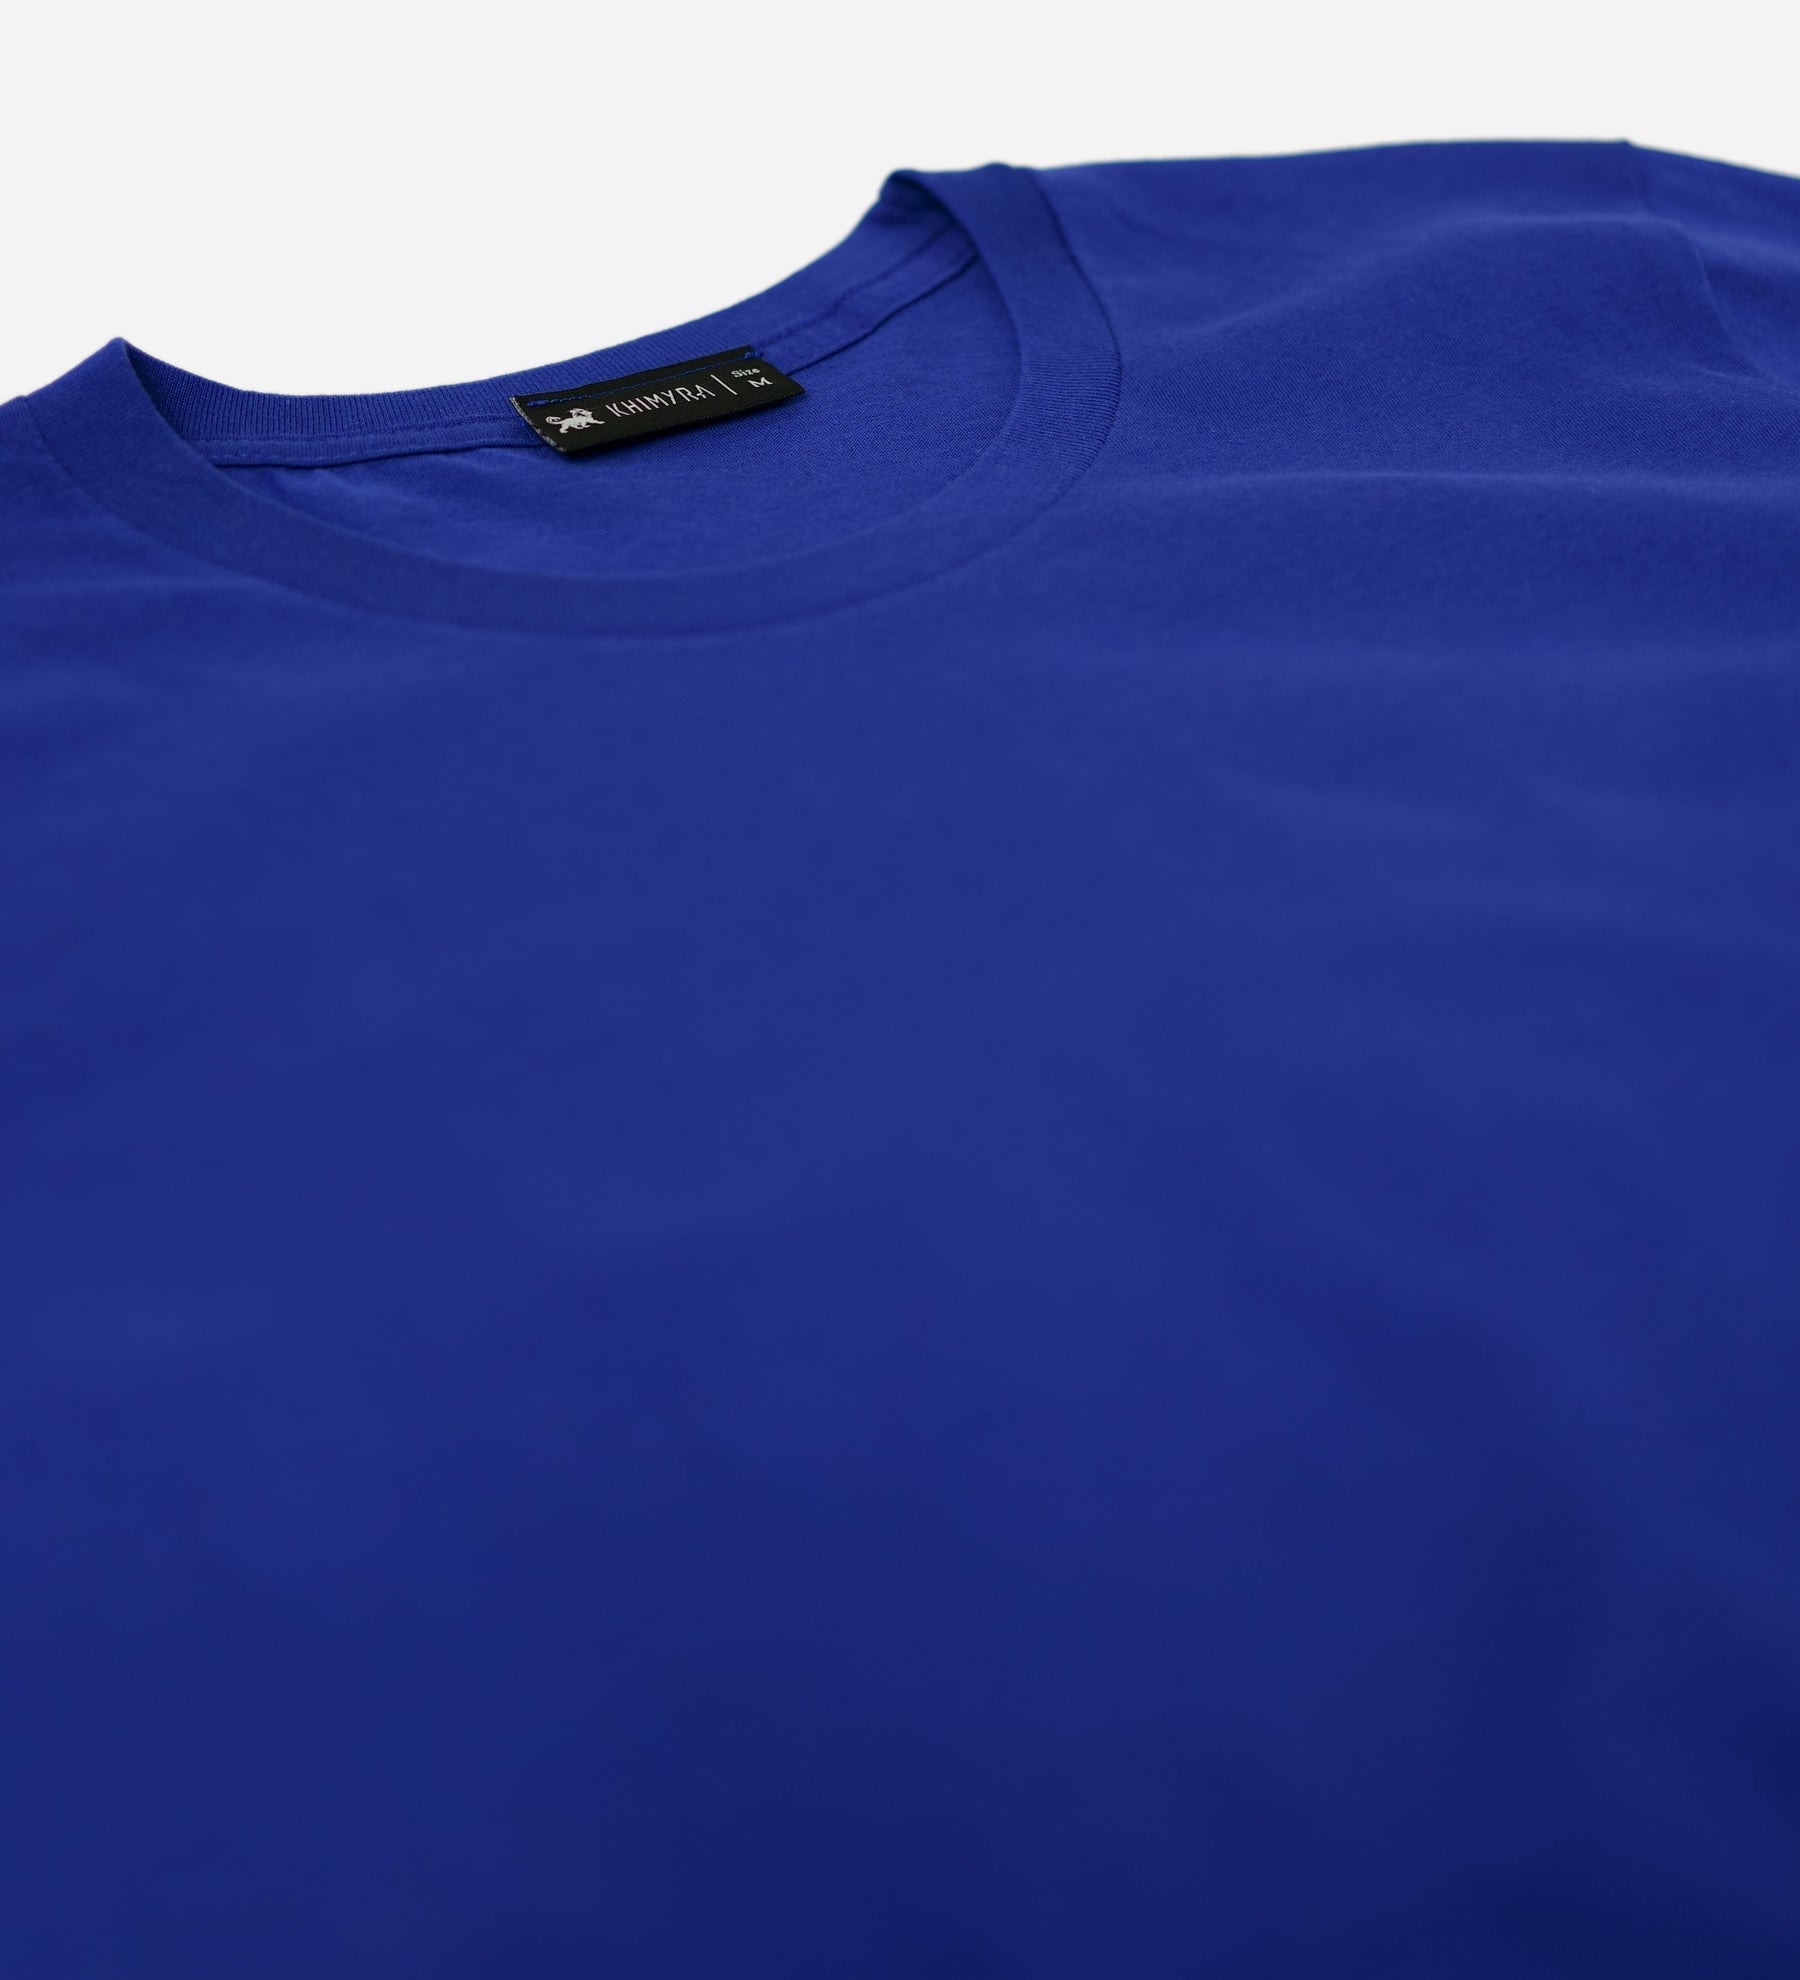 Essential Short Sleeve T-Shirt for Men - Khimyra